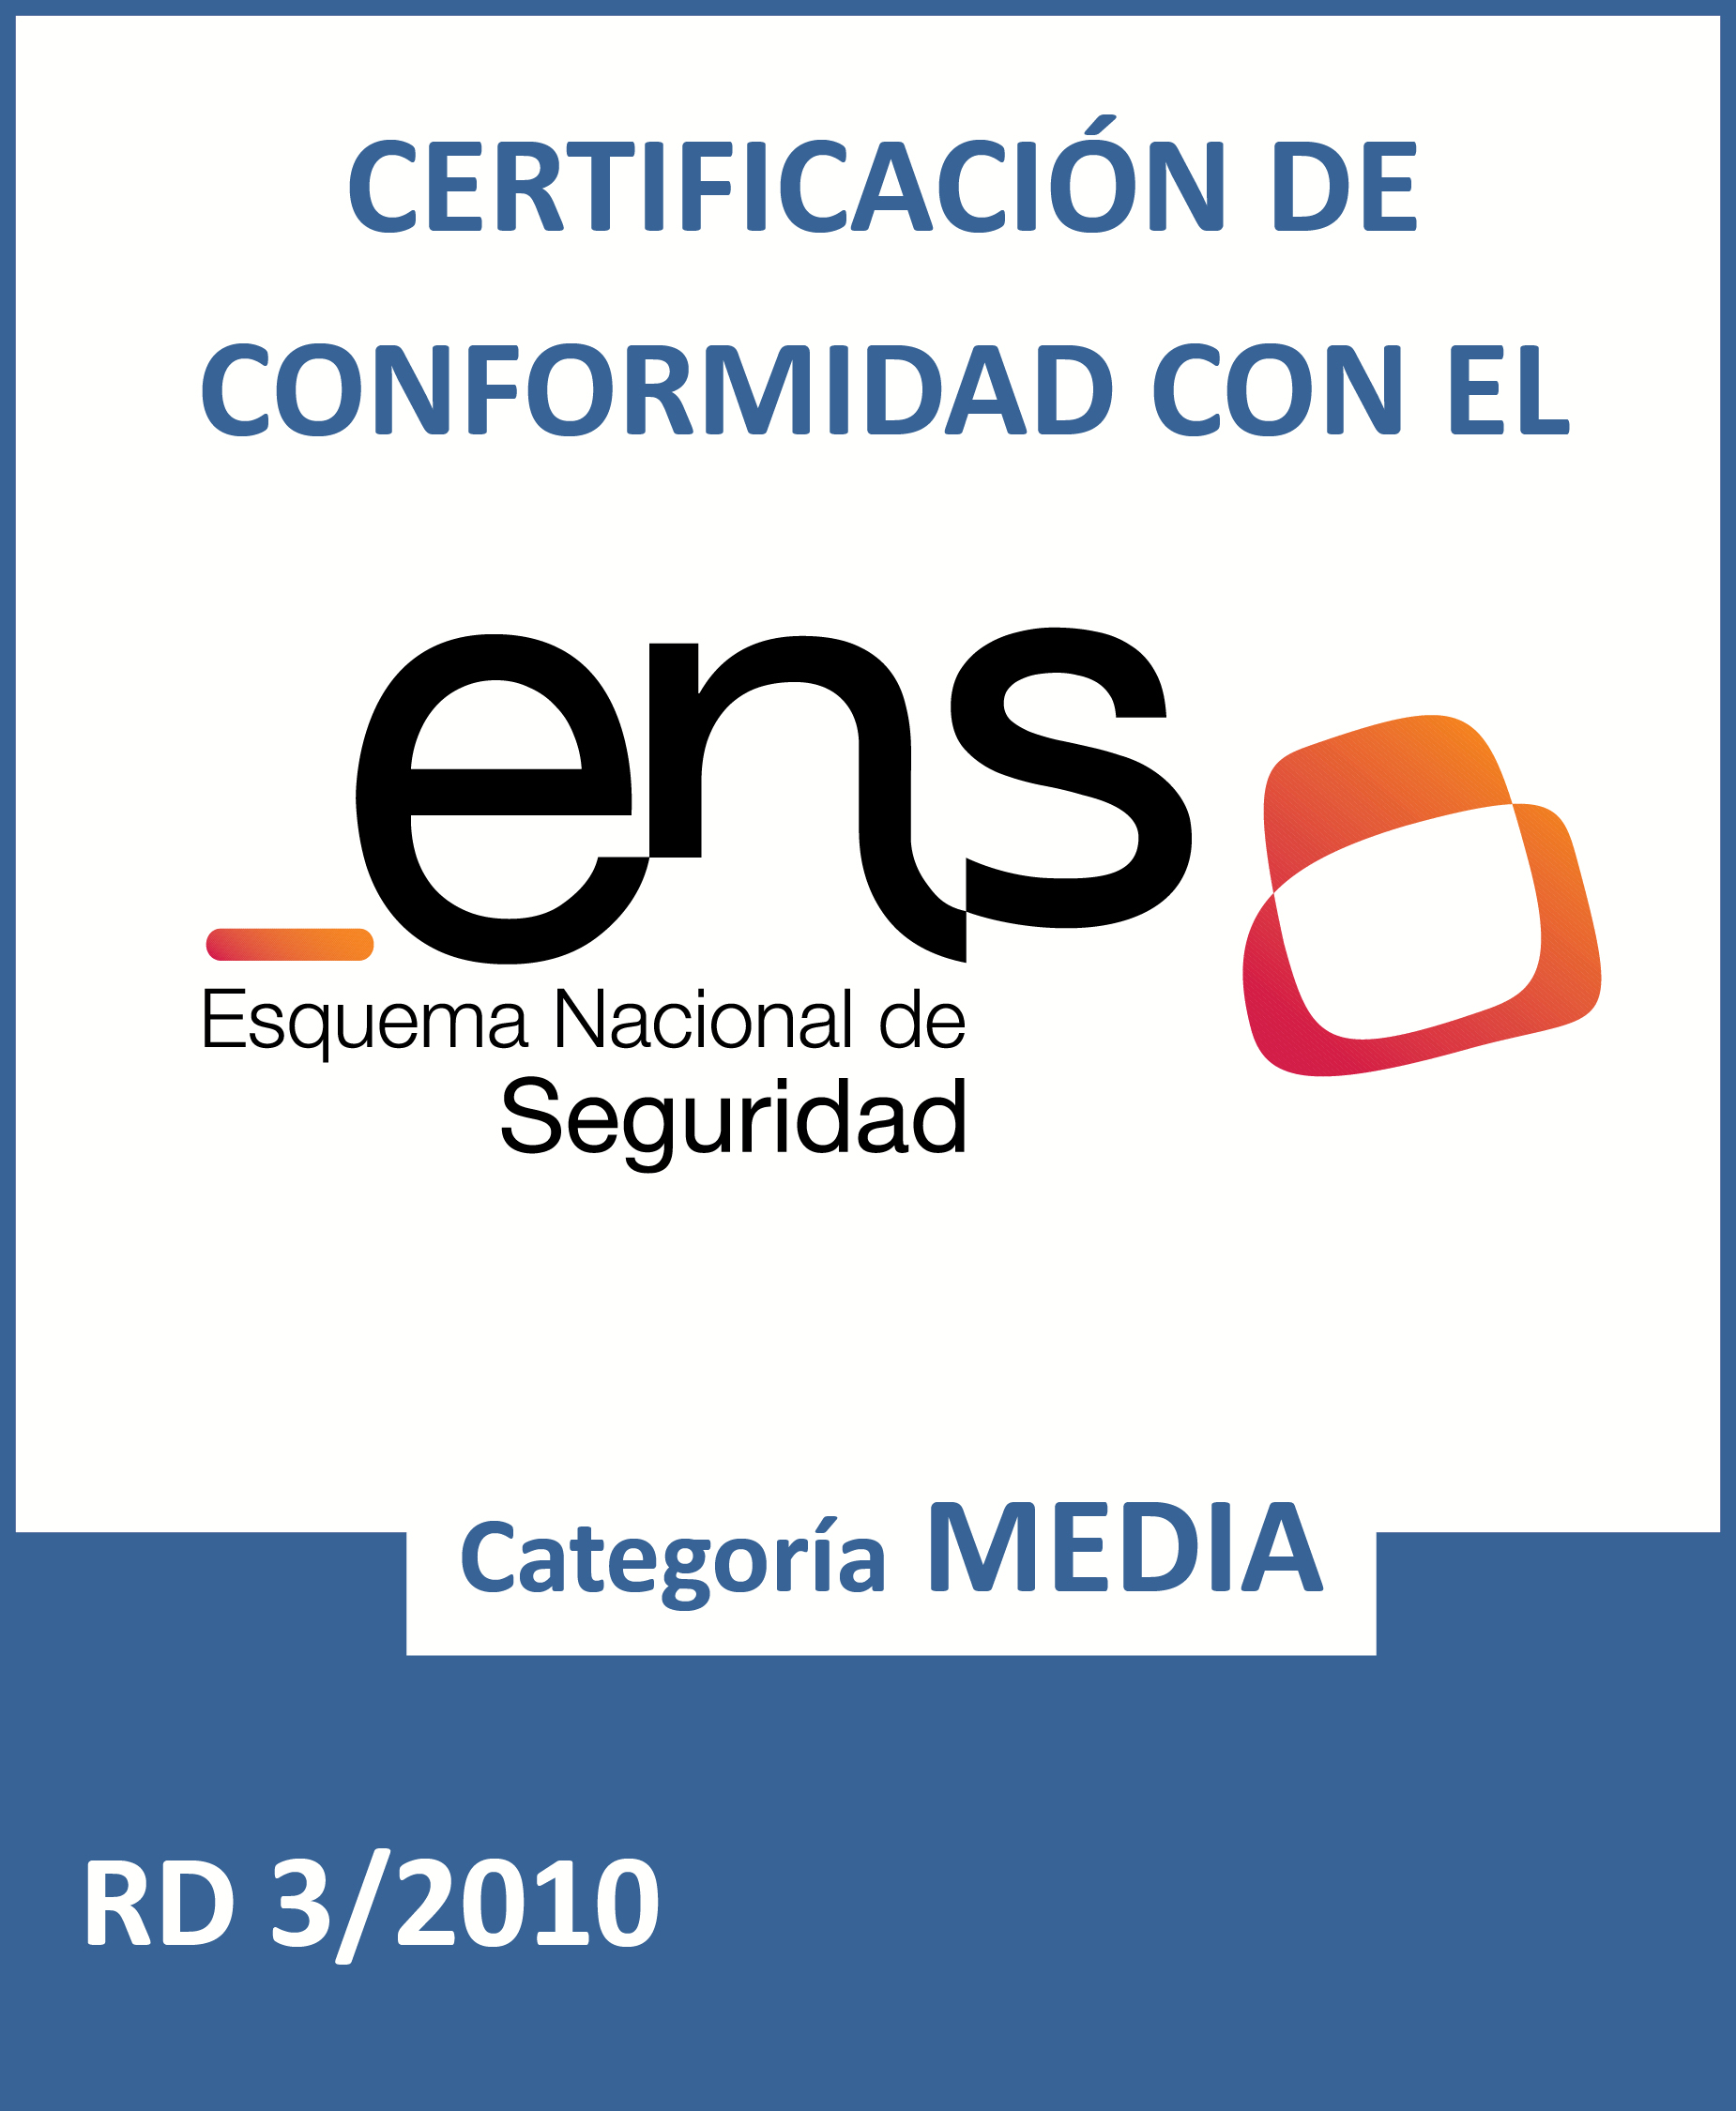 Logotipo ENS certificacion_MEDIA